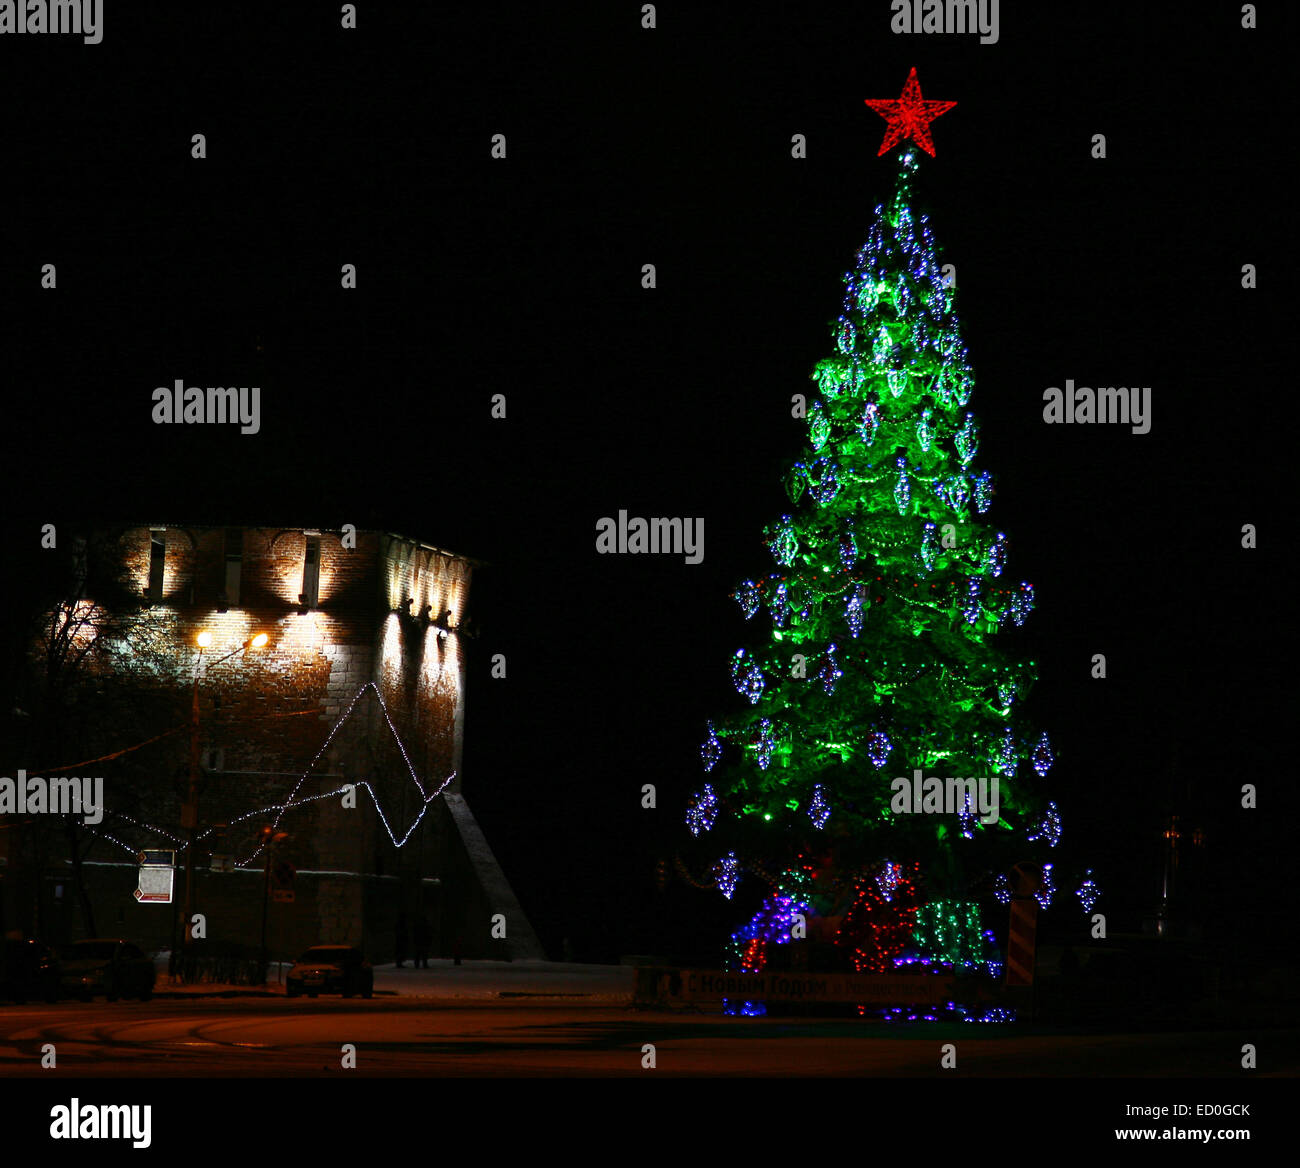 Christmas tree with red star in Nizhny Novgorod Stock Photo